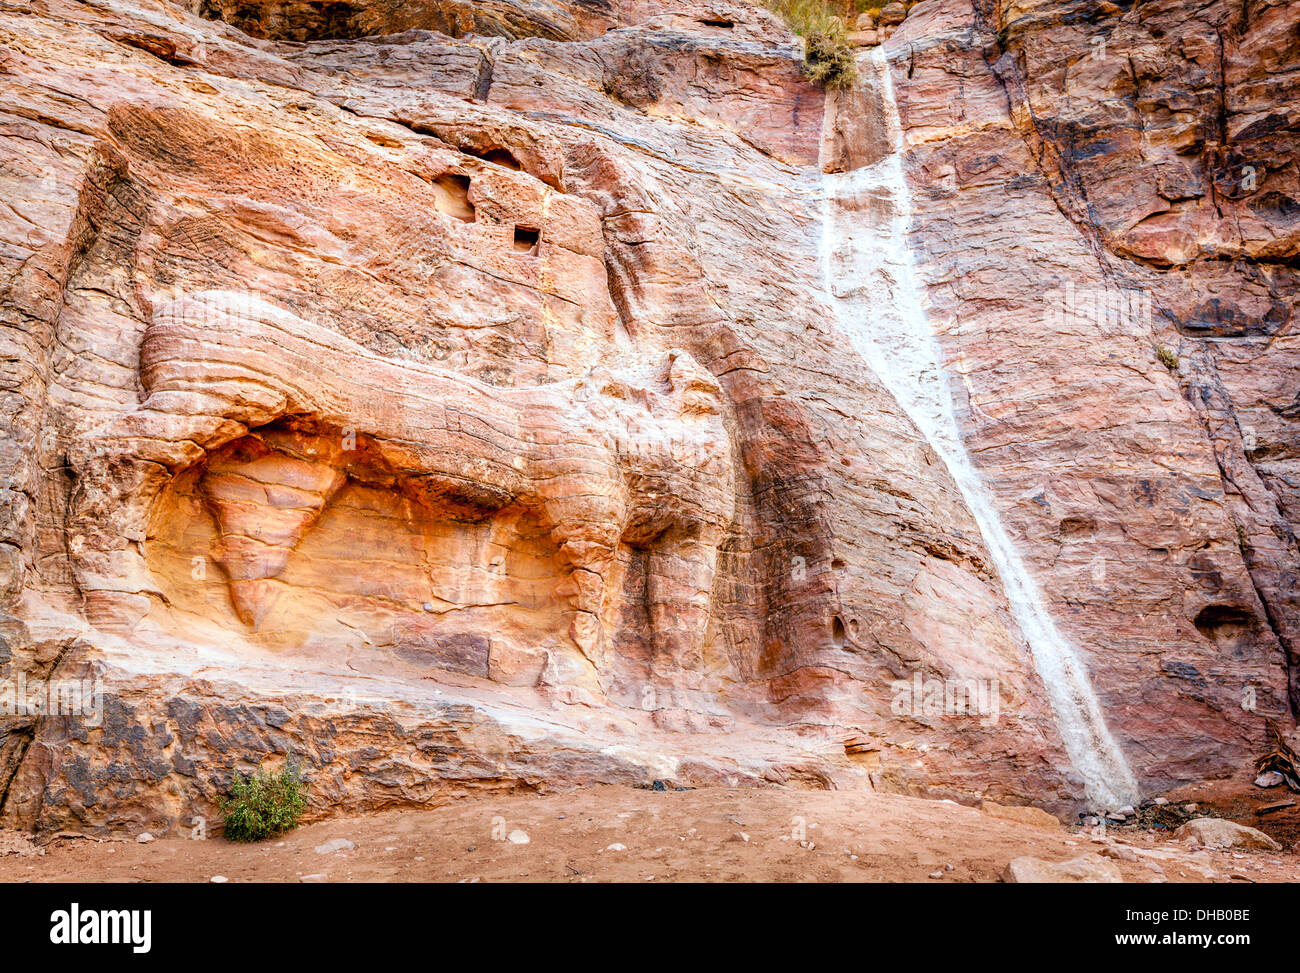 Sculpture of lion at Petra, Jordan Stock Photo - Alamy